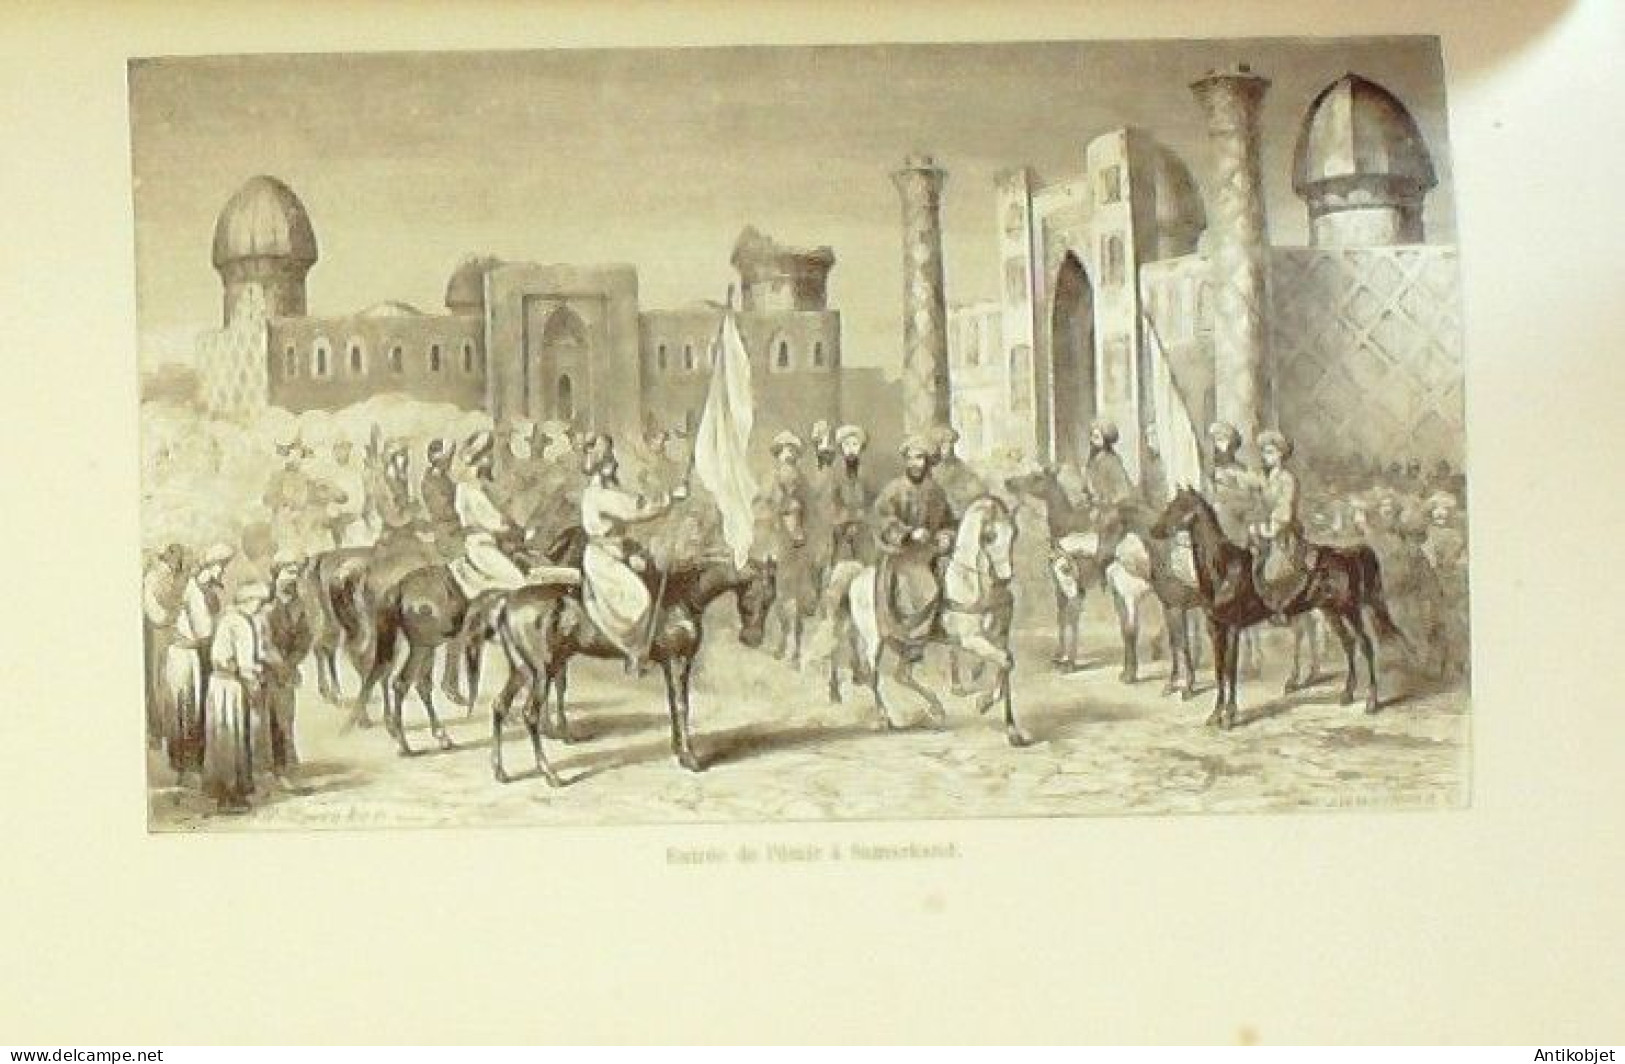 Vambéry Arminius voyages d'un faux Derviche Asie centrale 1865